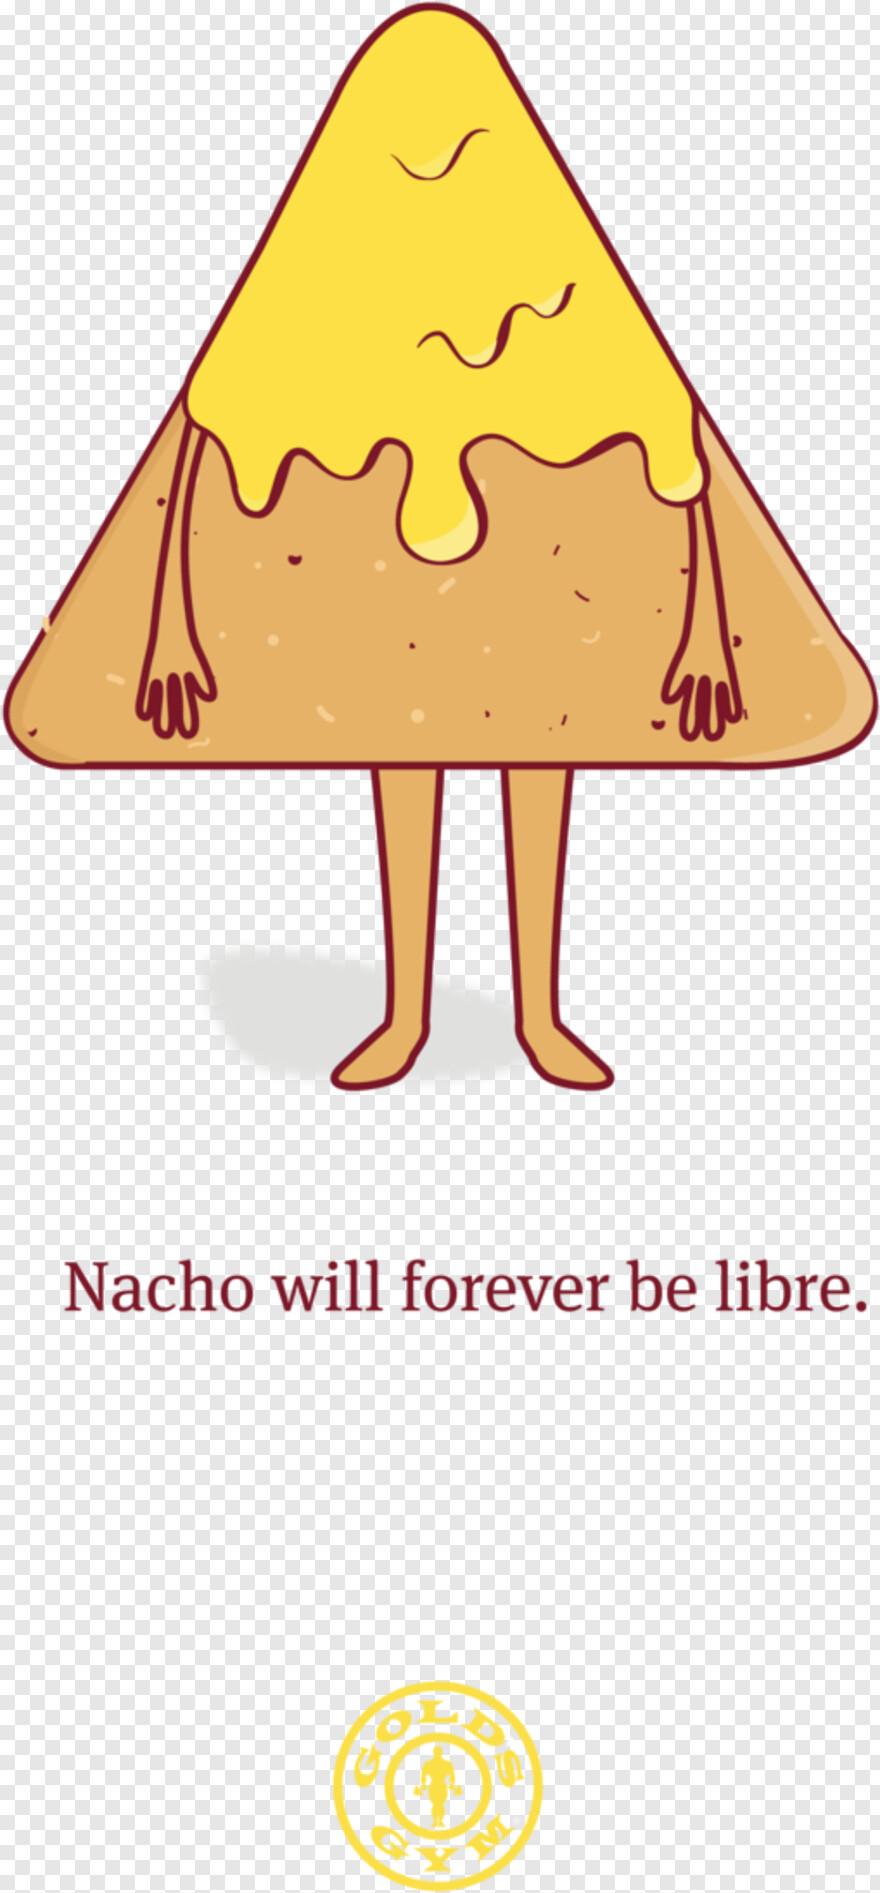 nacho-libre # 682340